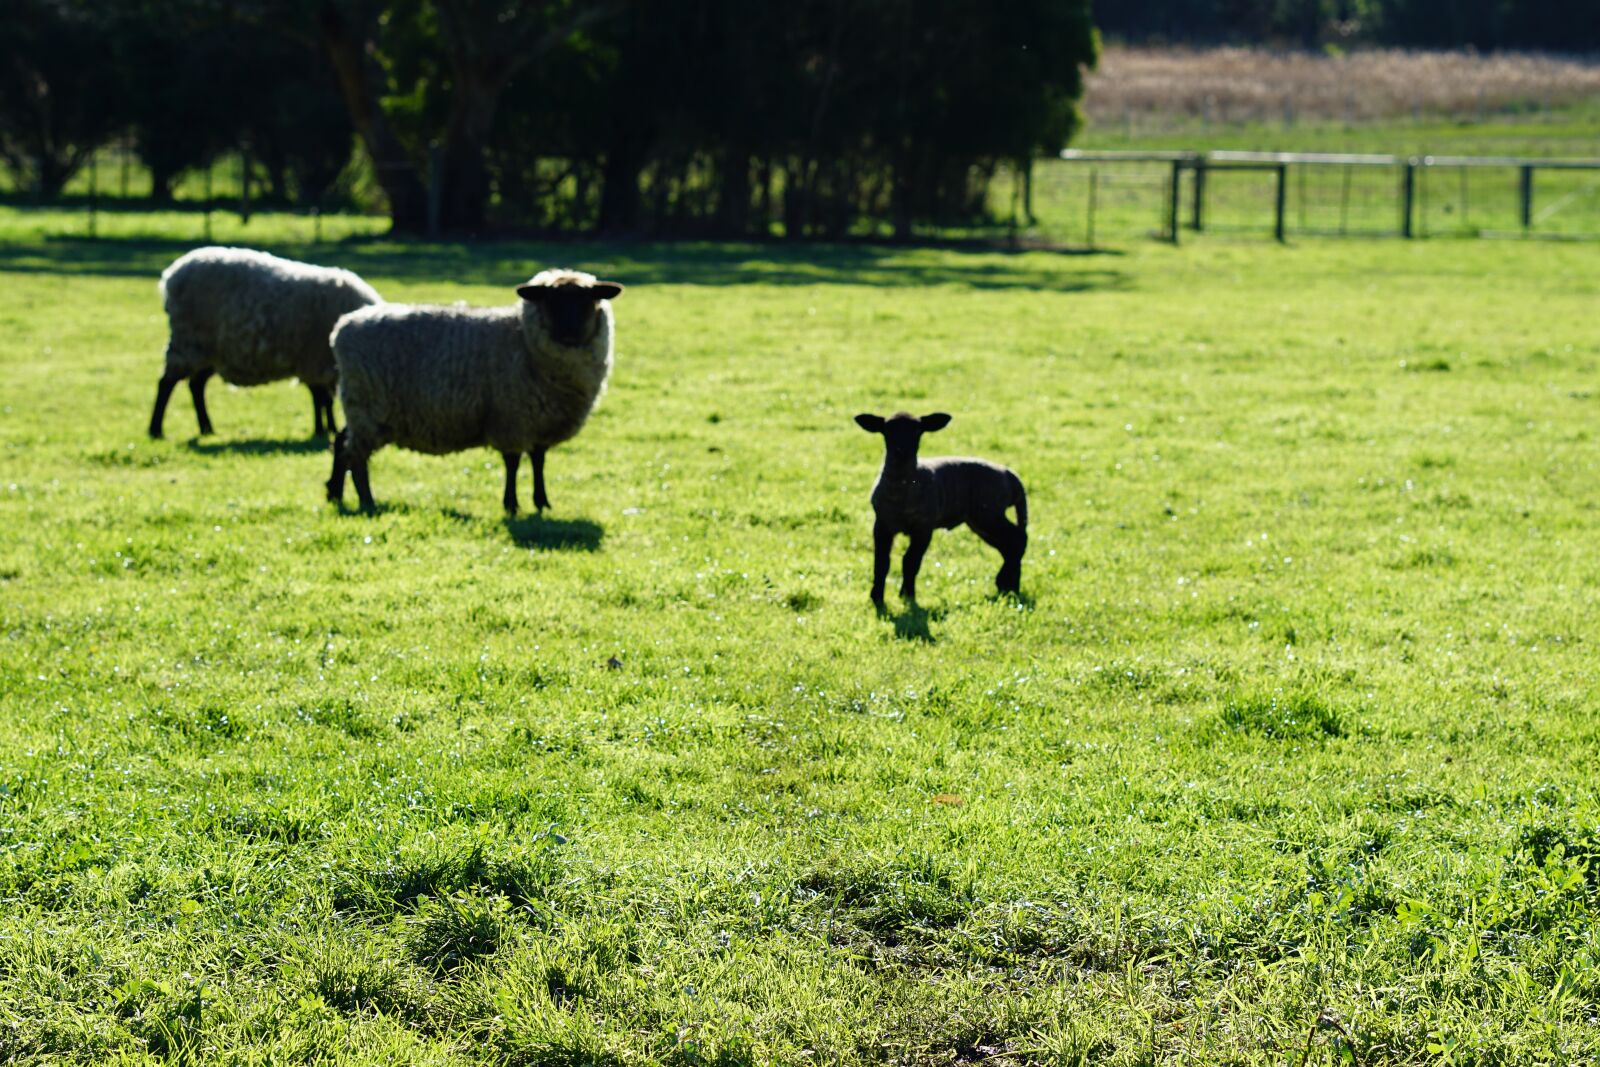 Sony a6000 + Sony FE 85mm F1.8 sample photo. Farm, sheep, lamb photography